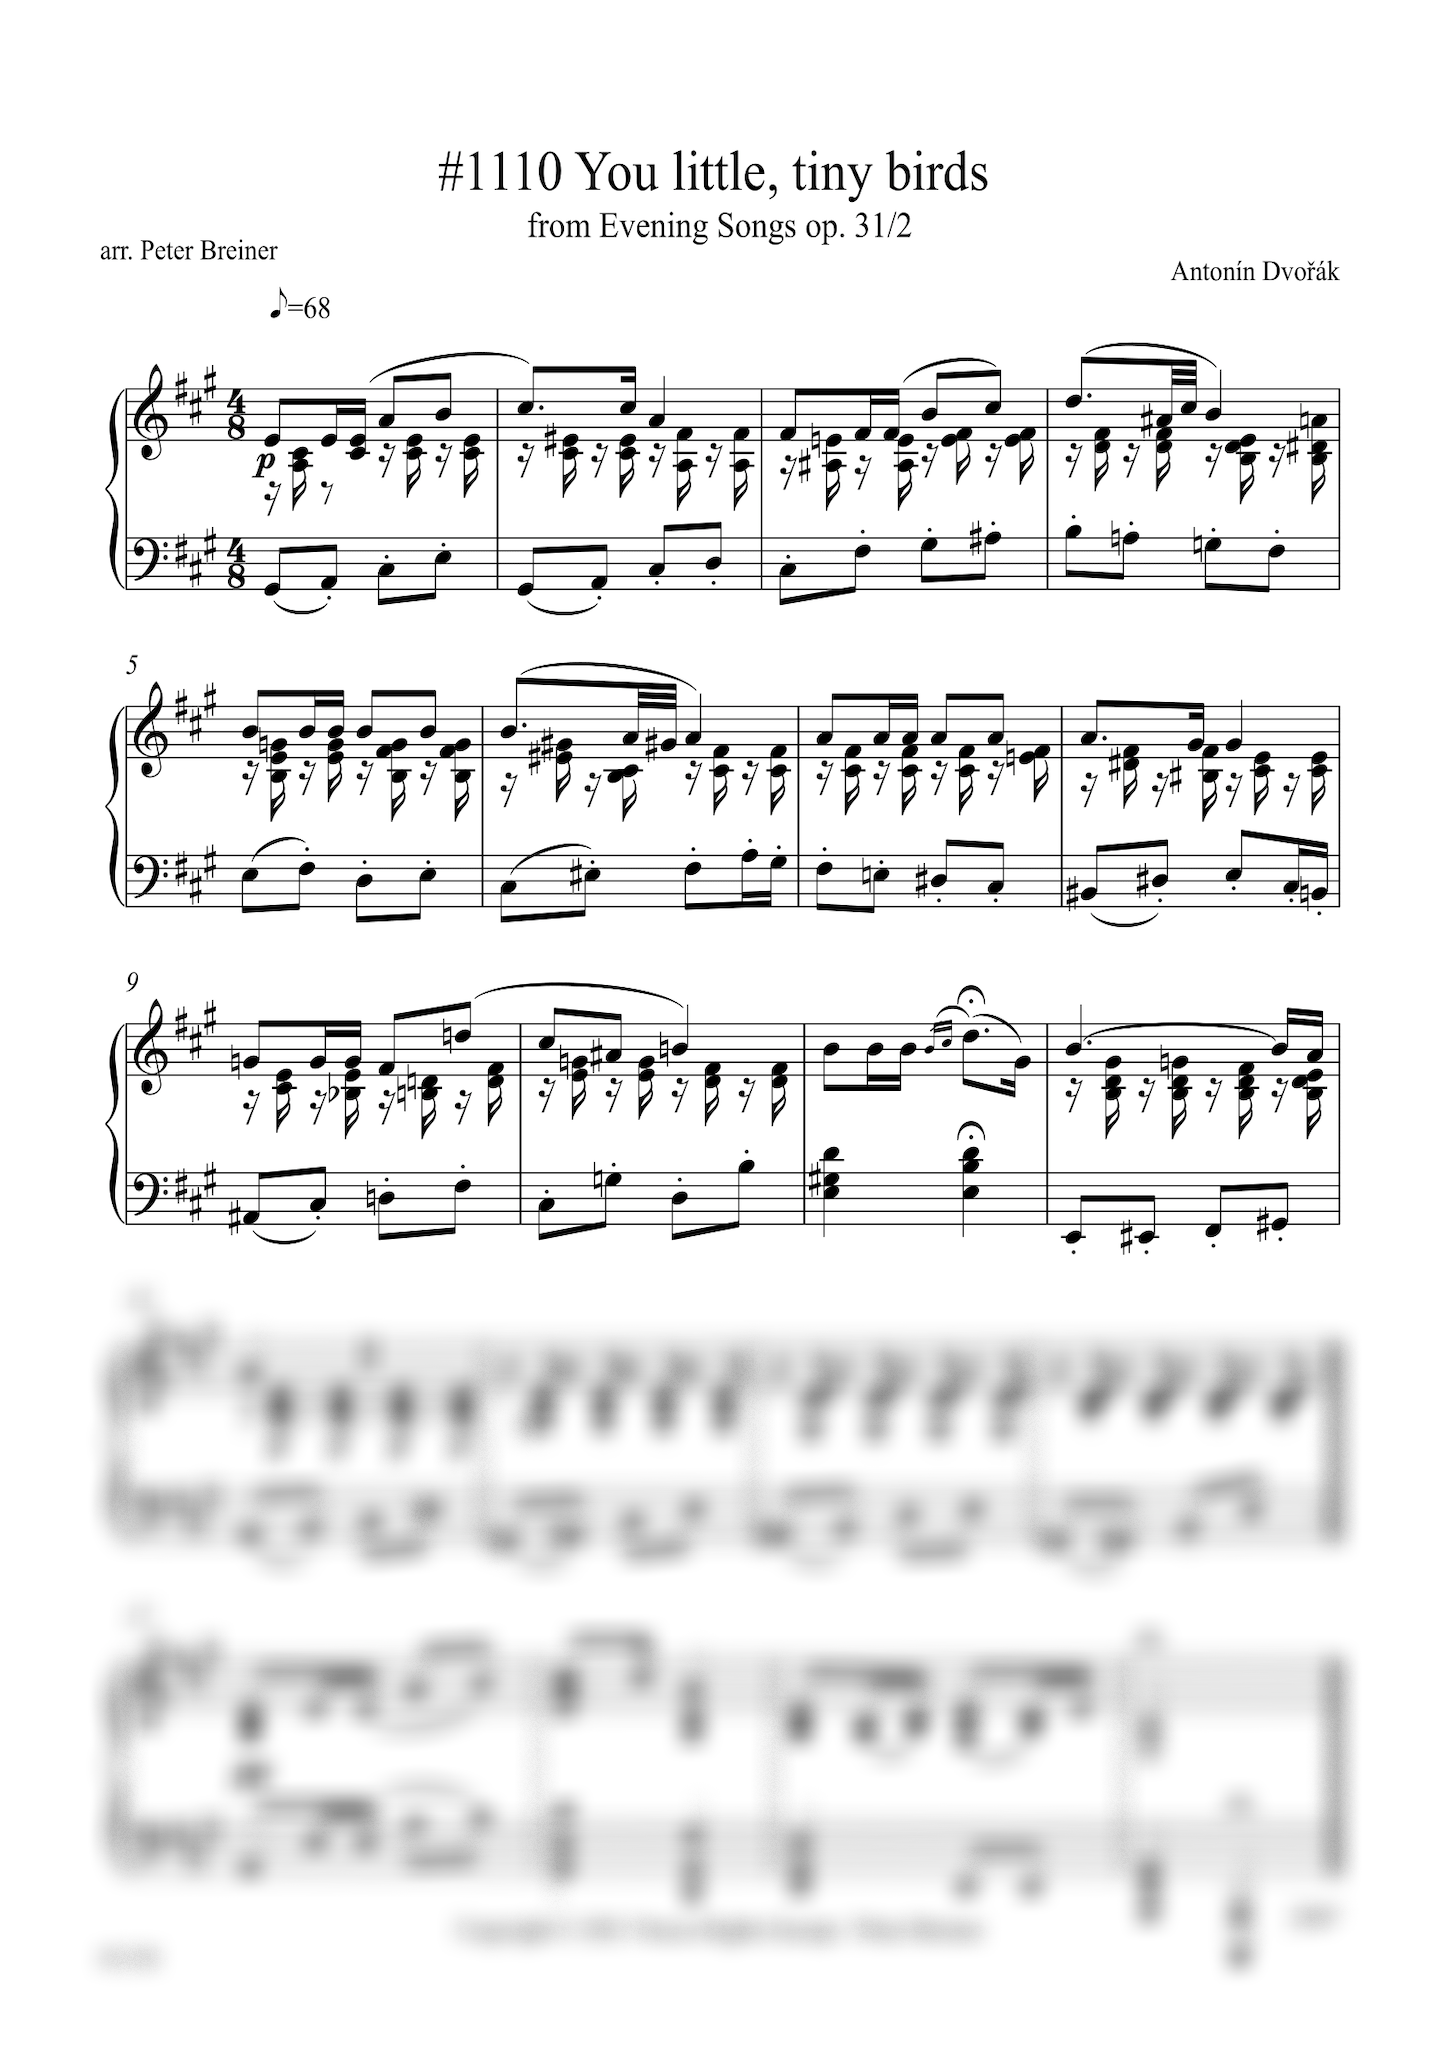 Antonín Dvořák: Vy malí drobní ptáčkové (You little tiny birds) from Večerní písně (Evening Songs) (arranged for piano by Peter Breiner) (PB153)